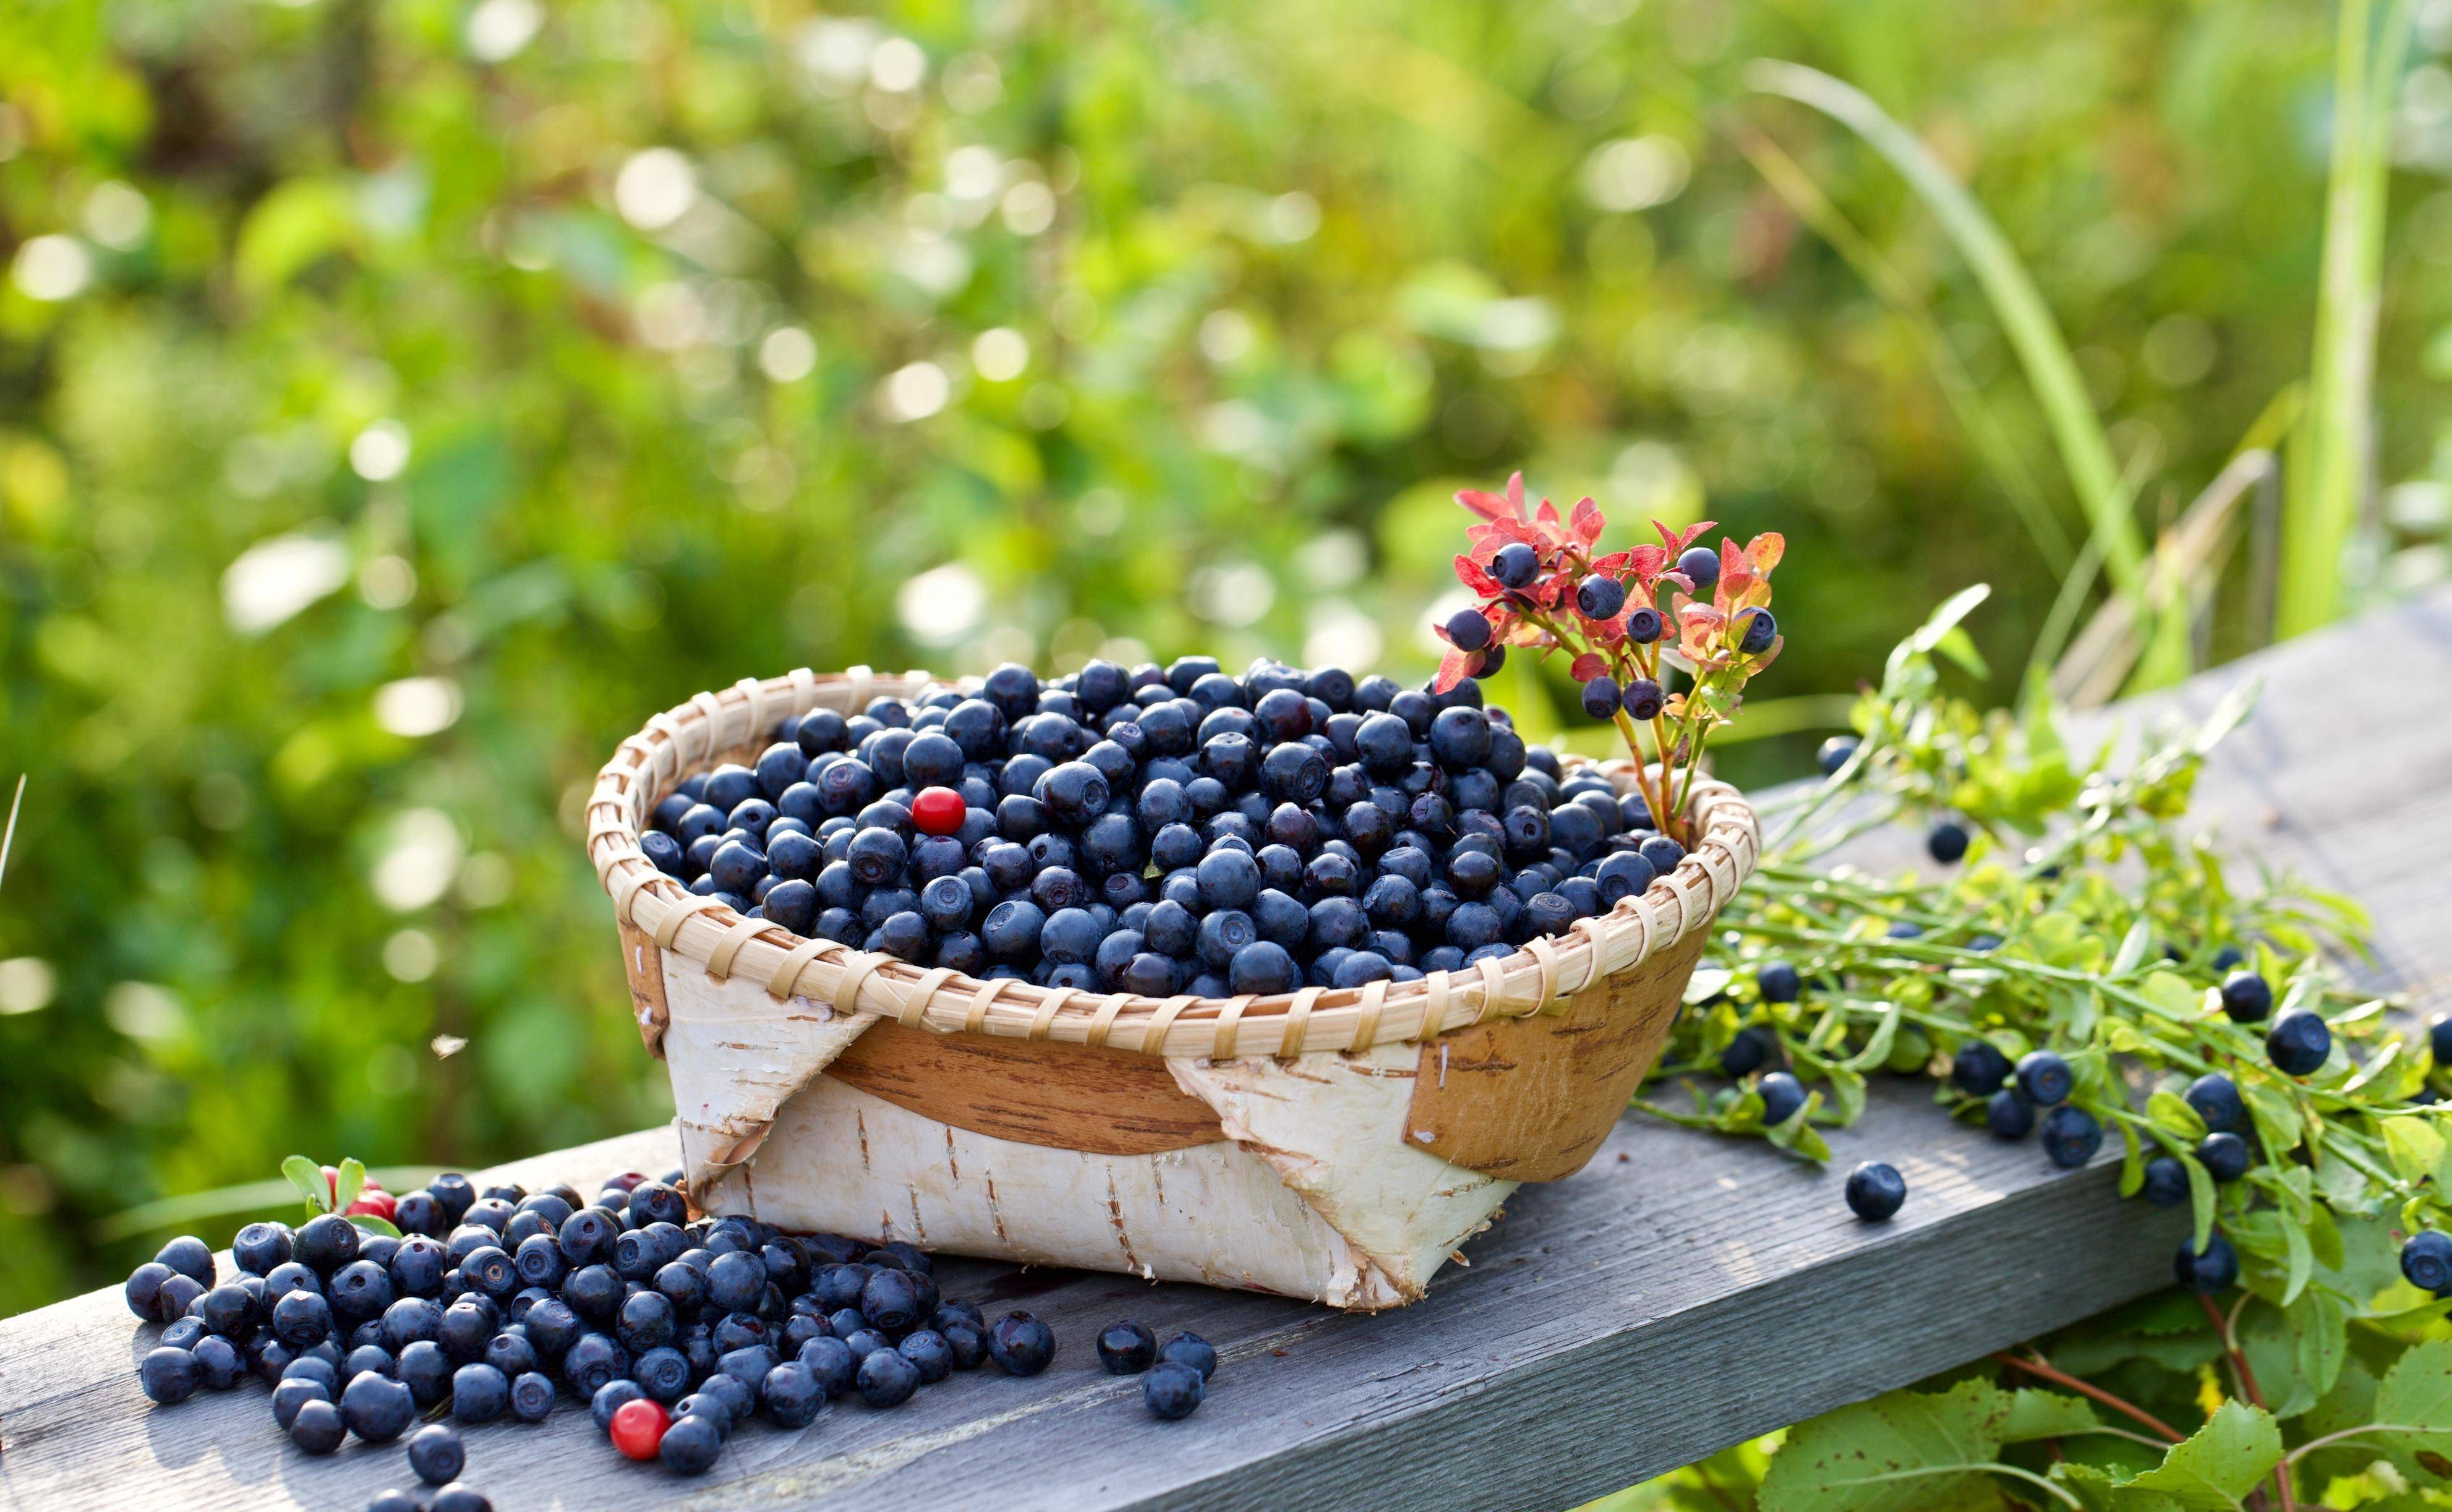 芬兰,瑞典为主的北欧地区生长的单生或对生的越橘黑果颜色比蓝莓深,呈